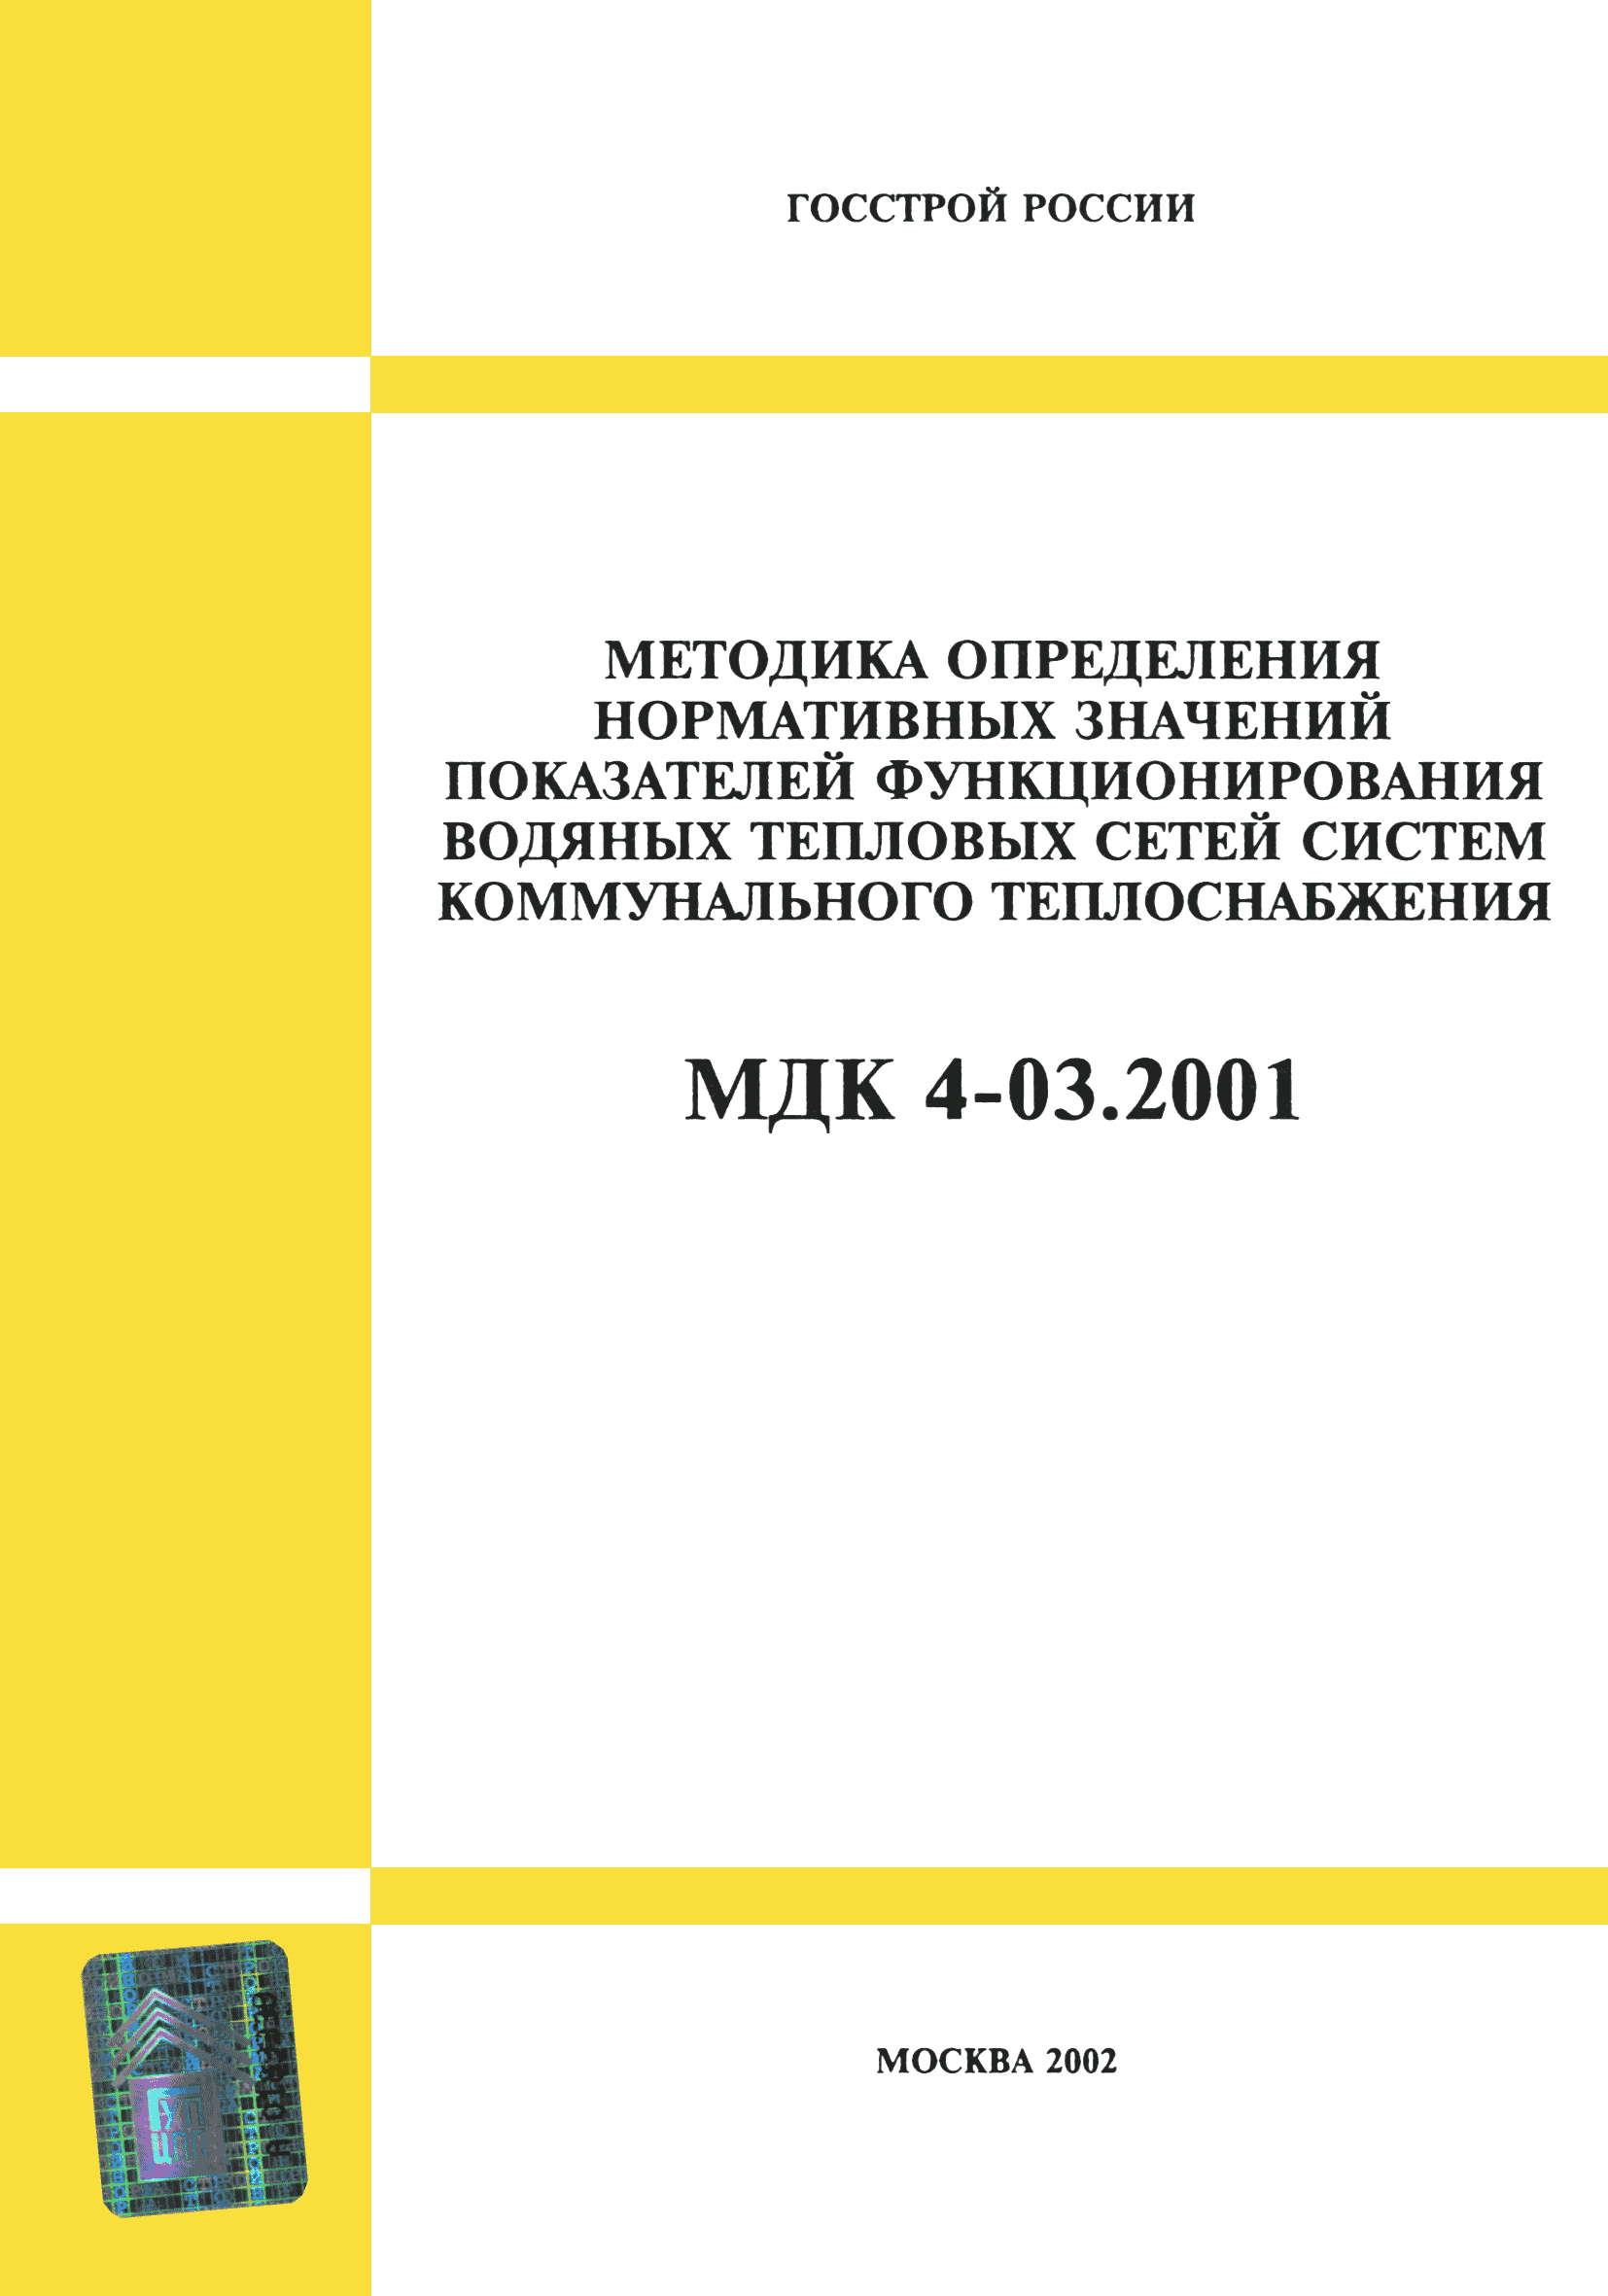 Ремонт тепловых сетей нормативные документы. МДК 03.04.